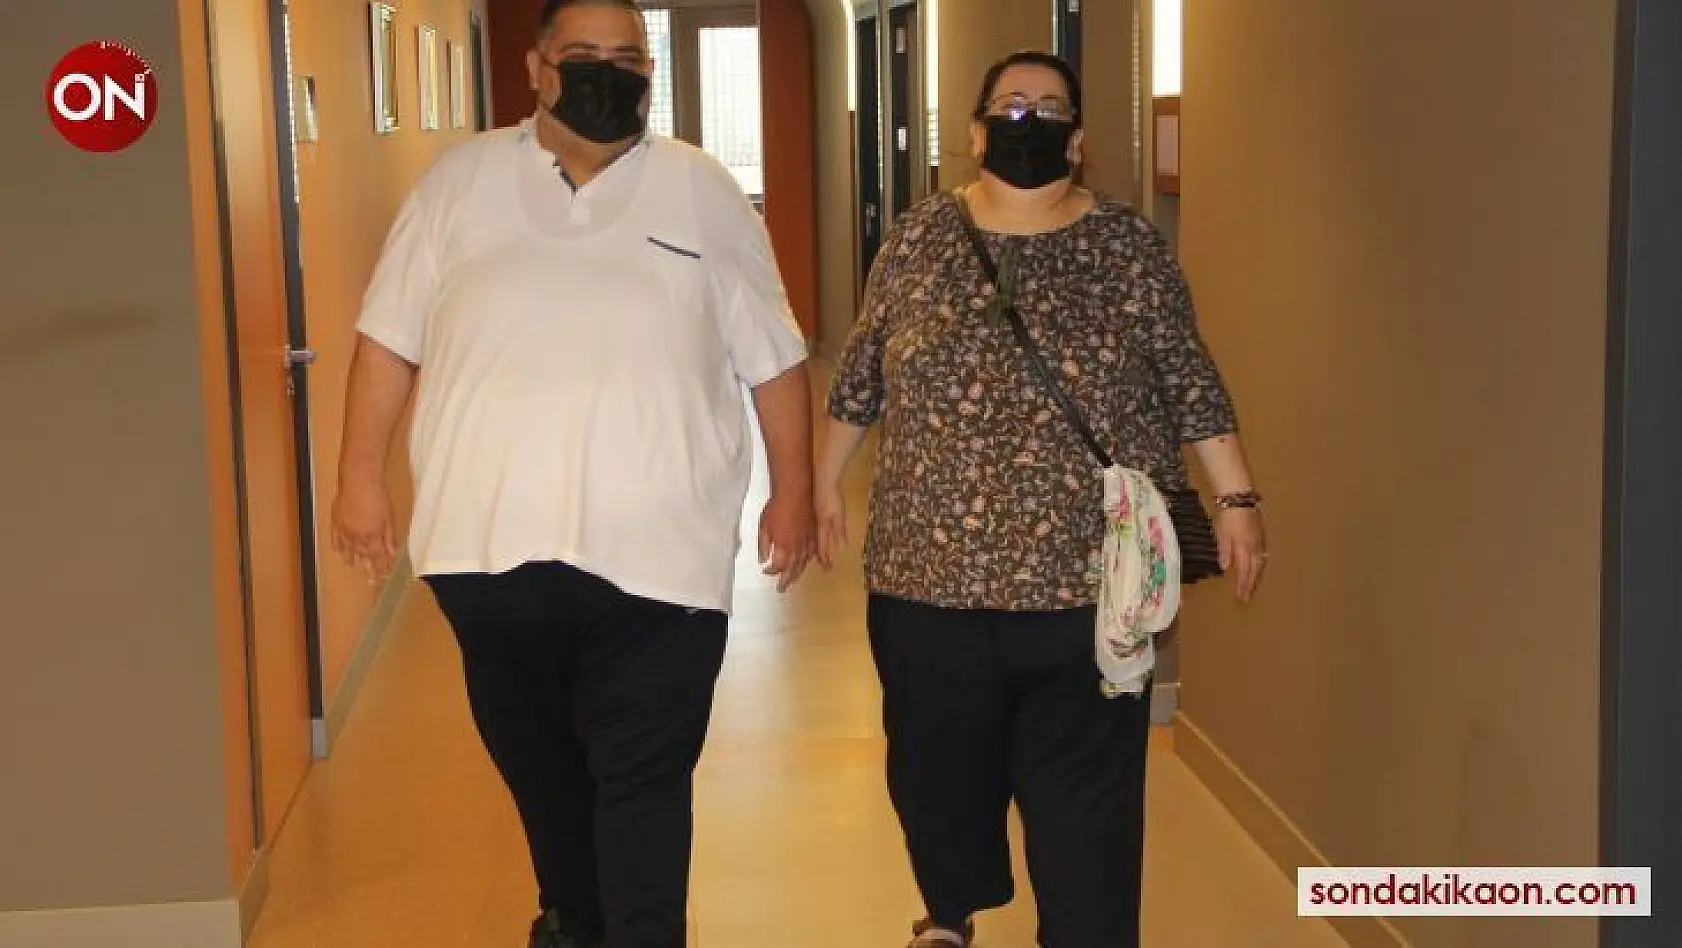 Süper obez çift, tüp mide ameliyatıyla şifa buldu